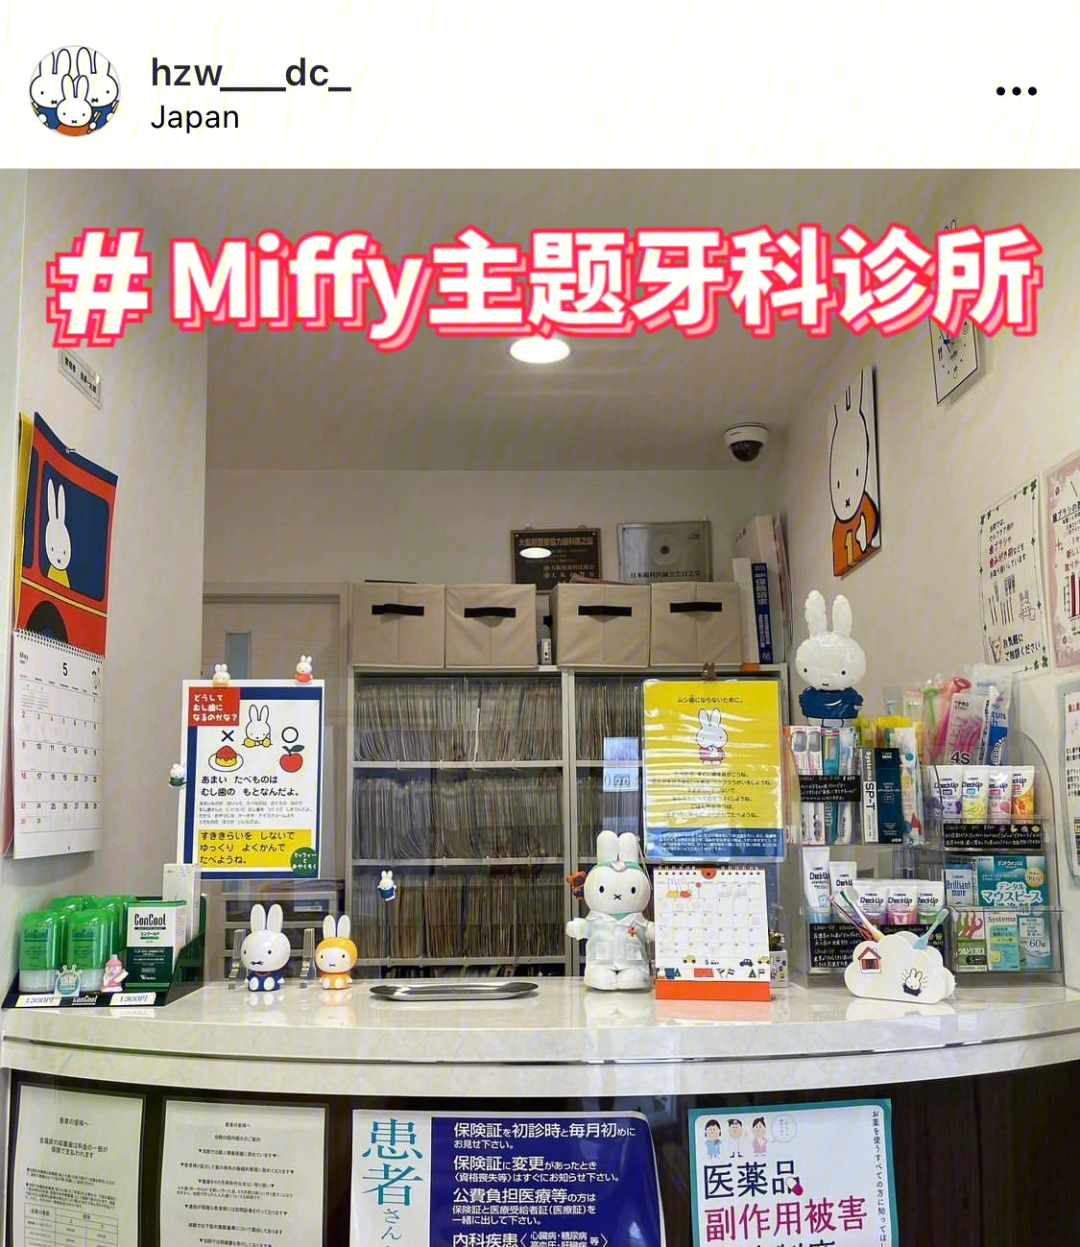 日本居然有一家miffy主题牙科诊所